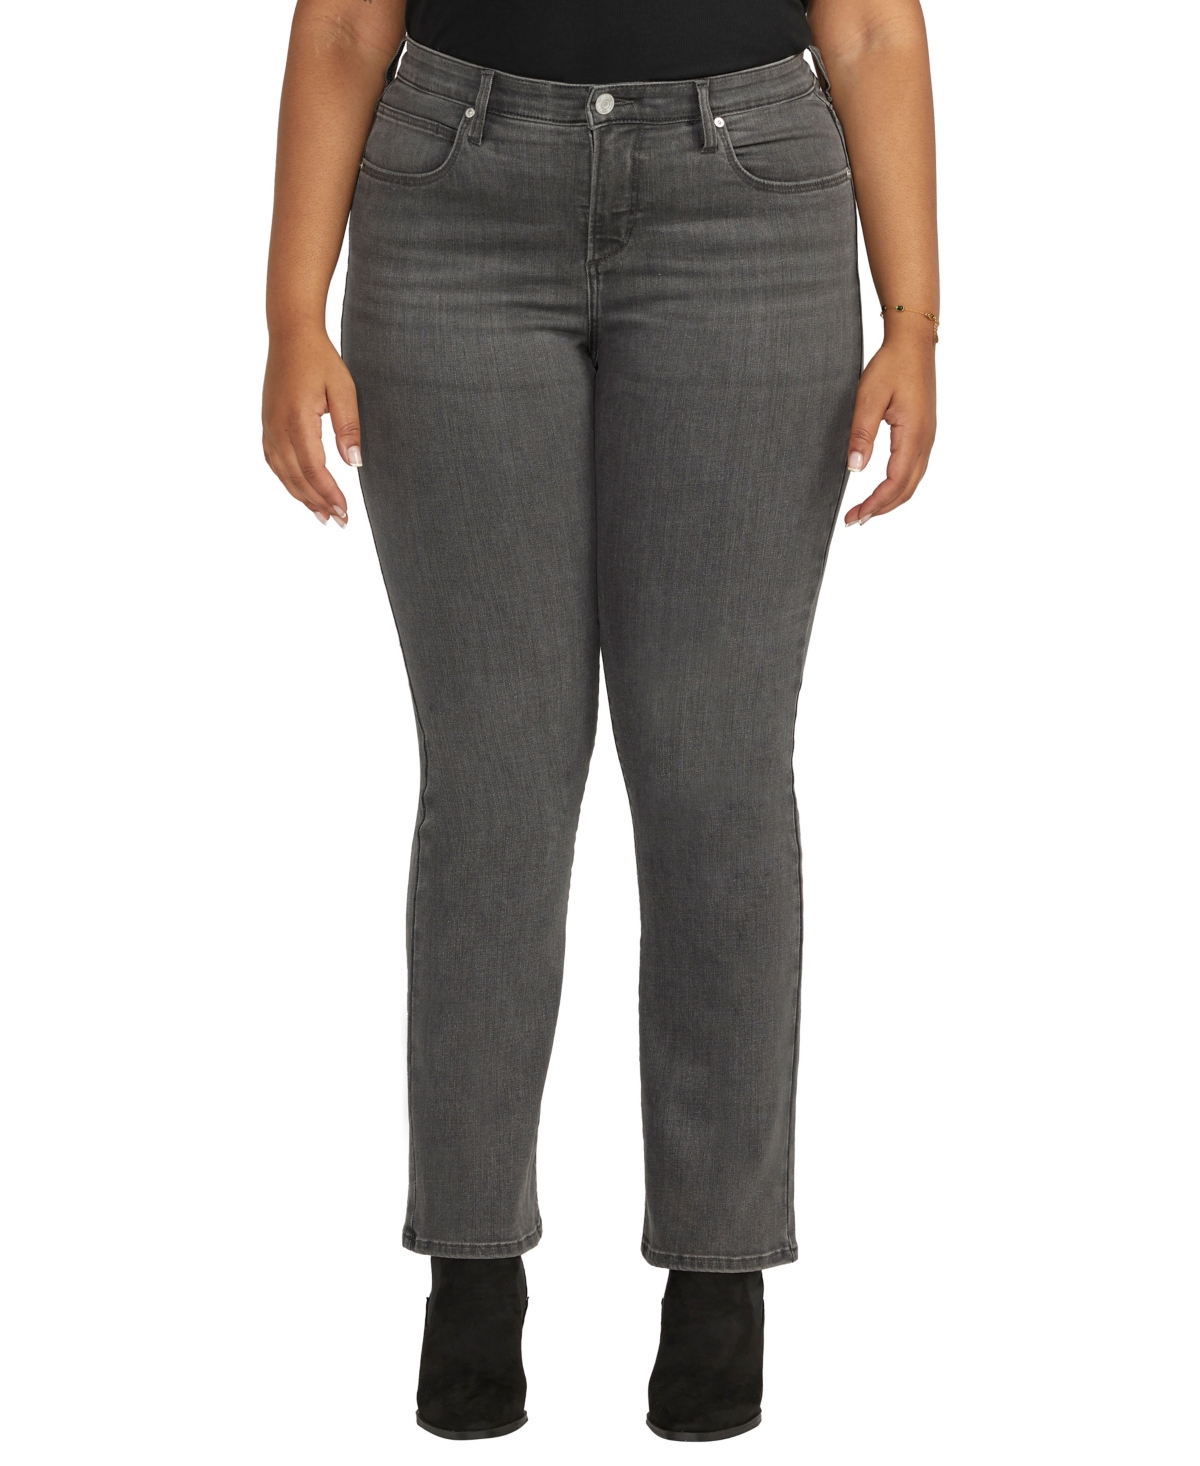 Plus Size Eloise Mid Rise Bootcut Jeans - Stormcloud